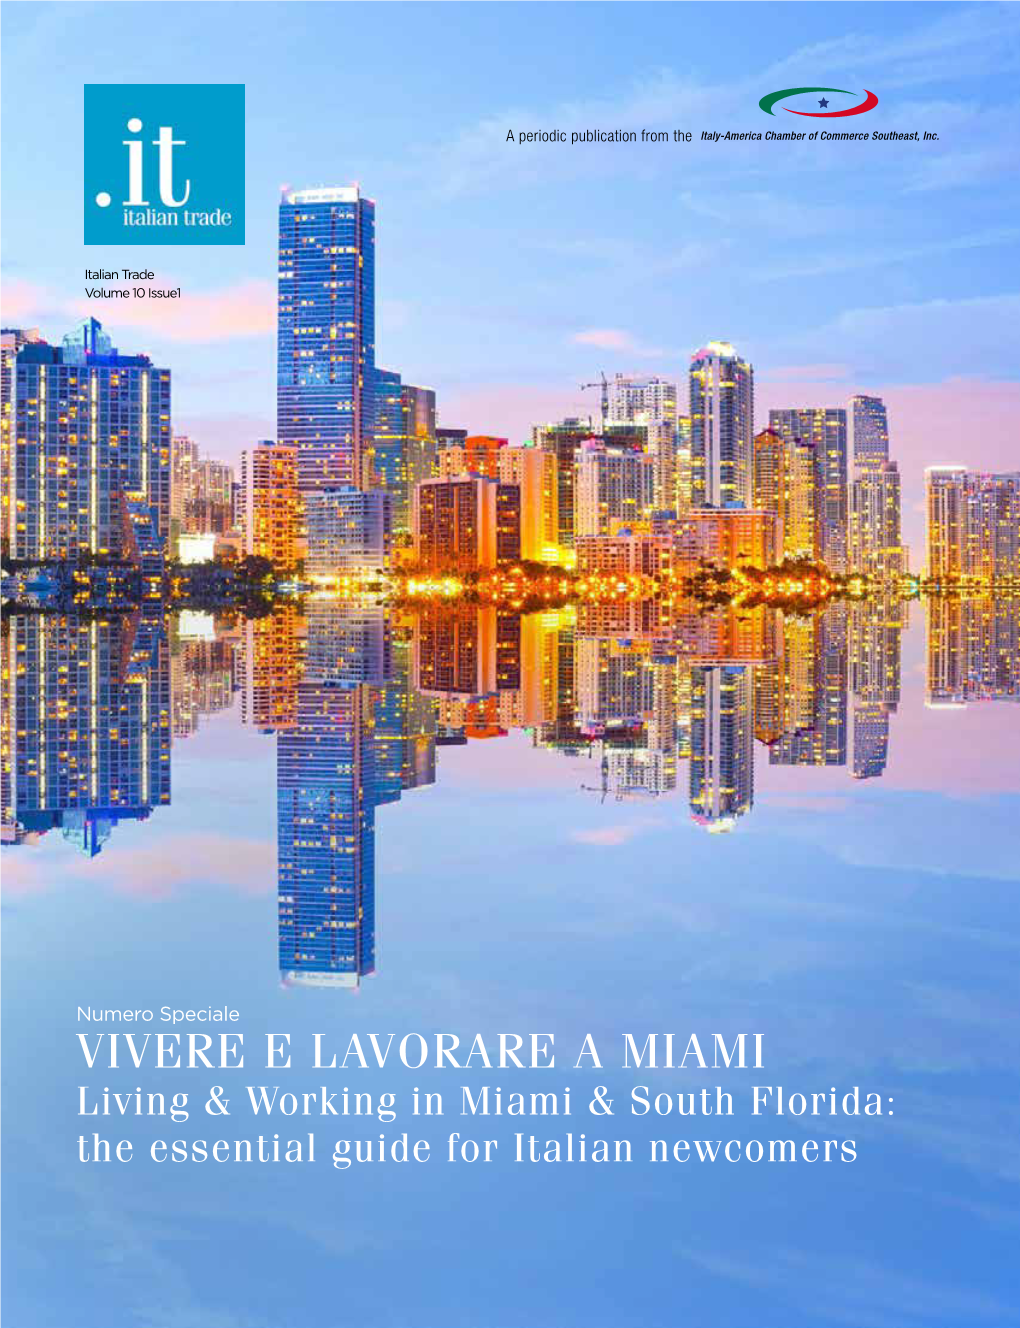 VIVERE E LAVORARE a MIAMI Living & Working in Miami & South Florida: the Essential Guide for Italian Newcomers